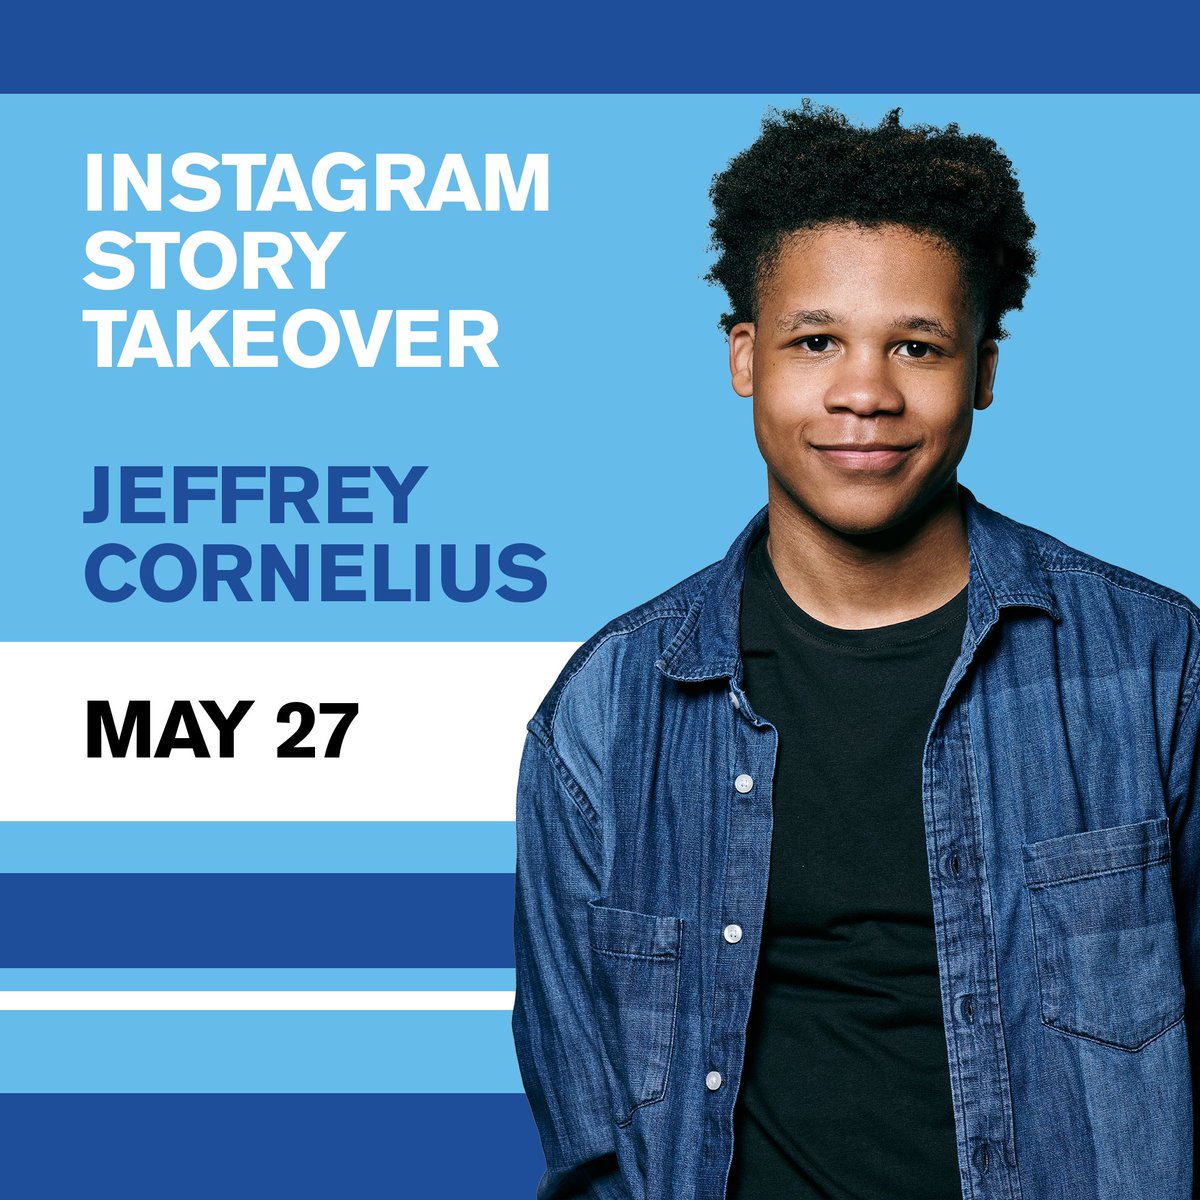 Hey! Hey! Hey! Hey! It's Jeffrey Cornelius taking over our Instagram story today.